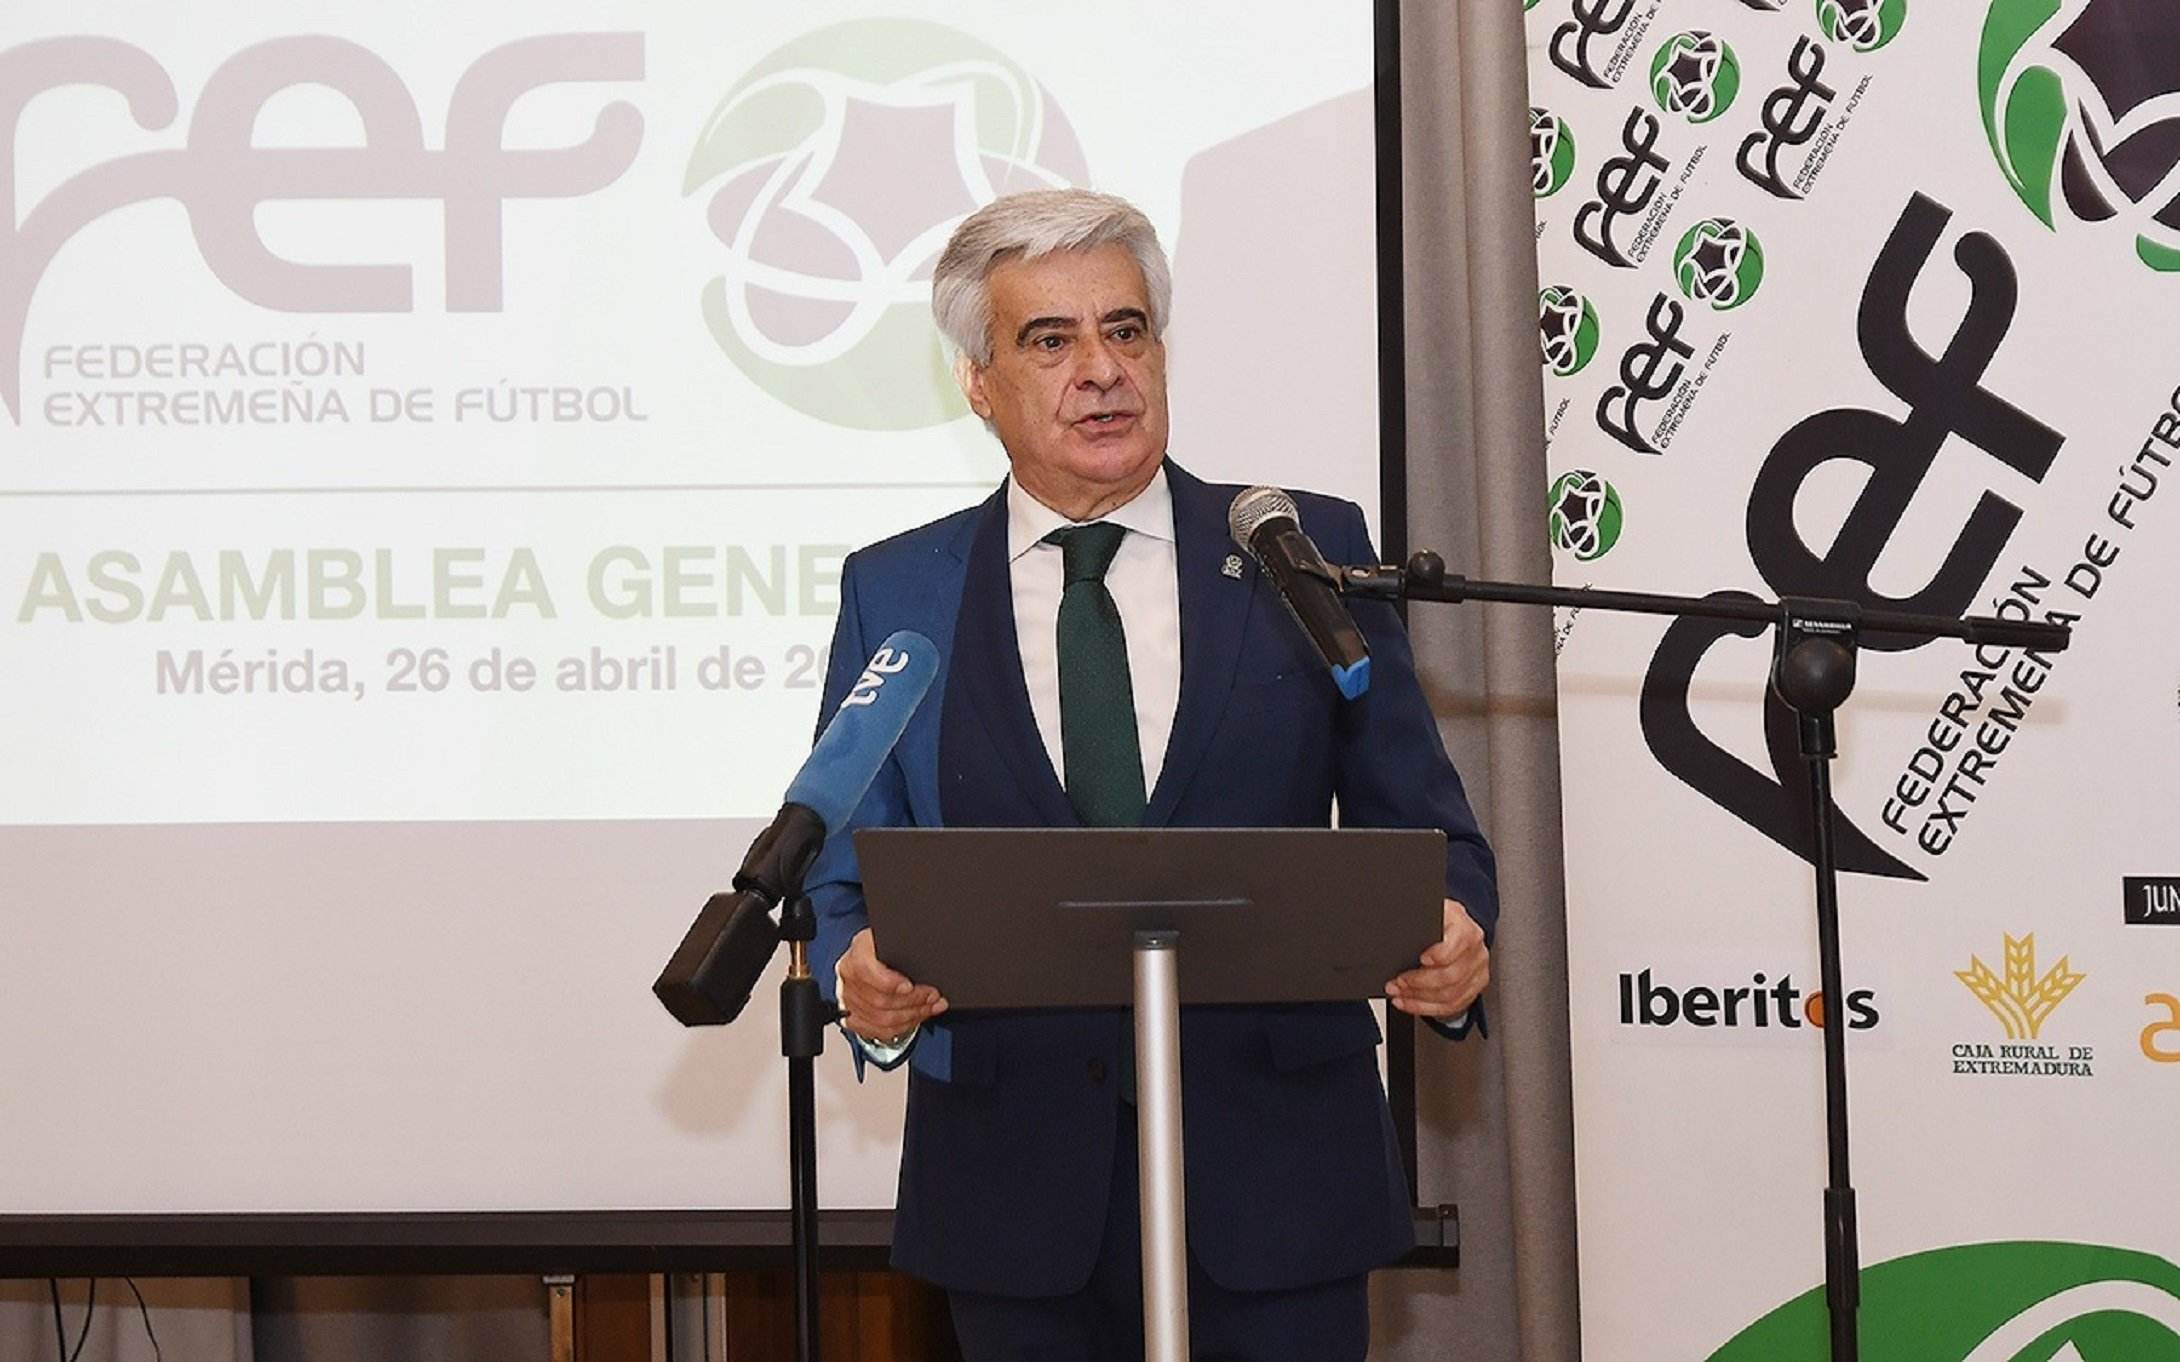 Pedro Rocha, la mano derecha de Rubiales y el principal candidato a sustituirlo como presidente de la RFEF